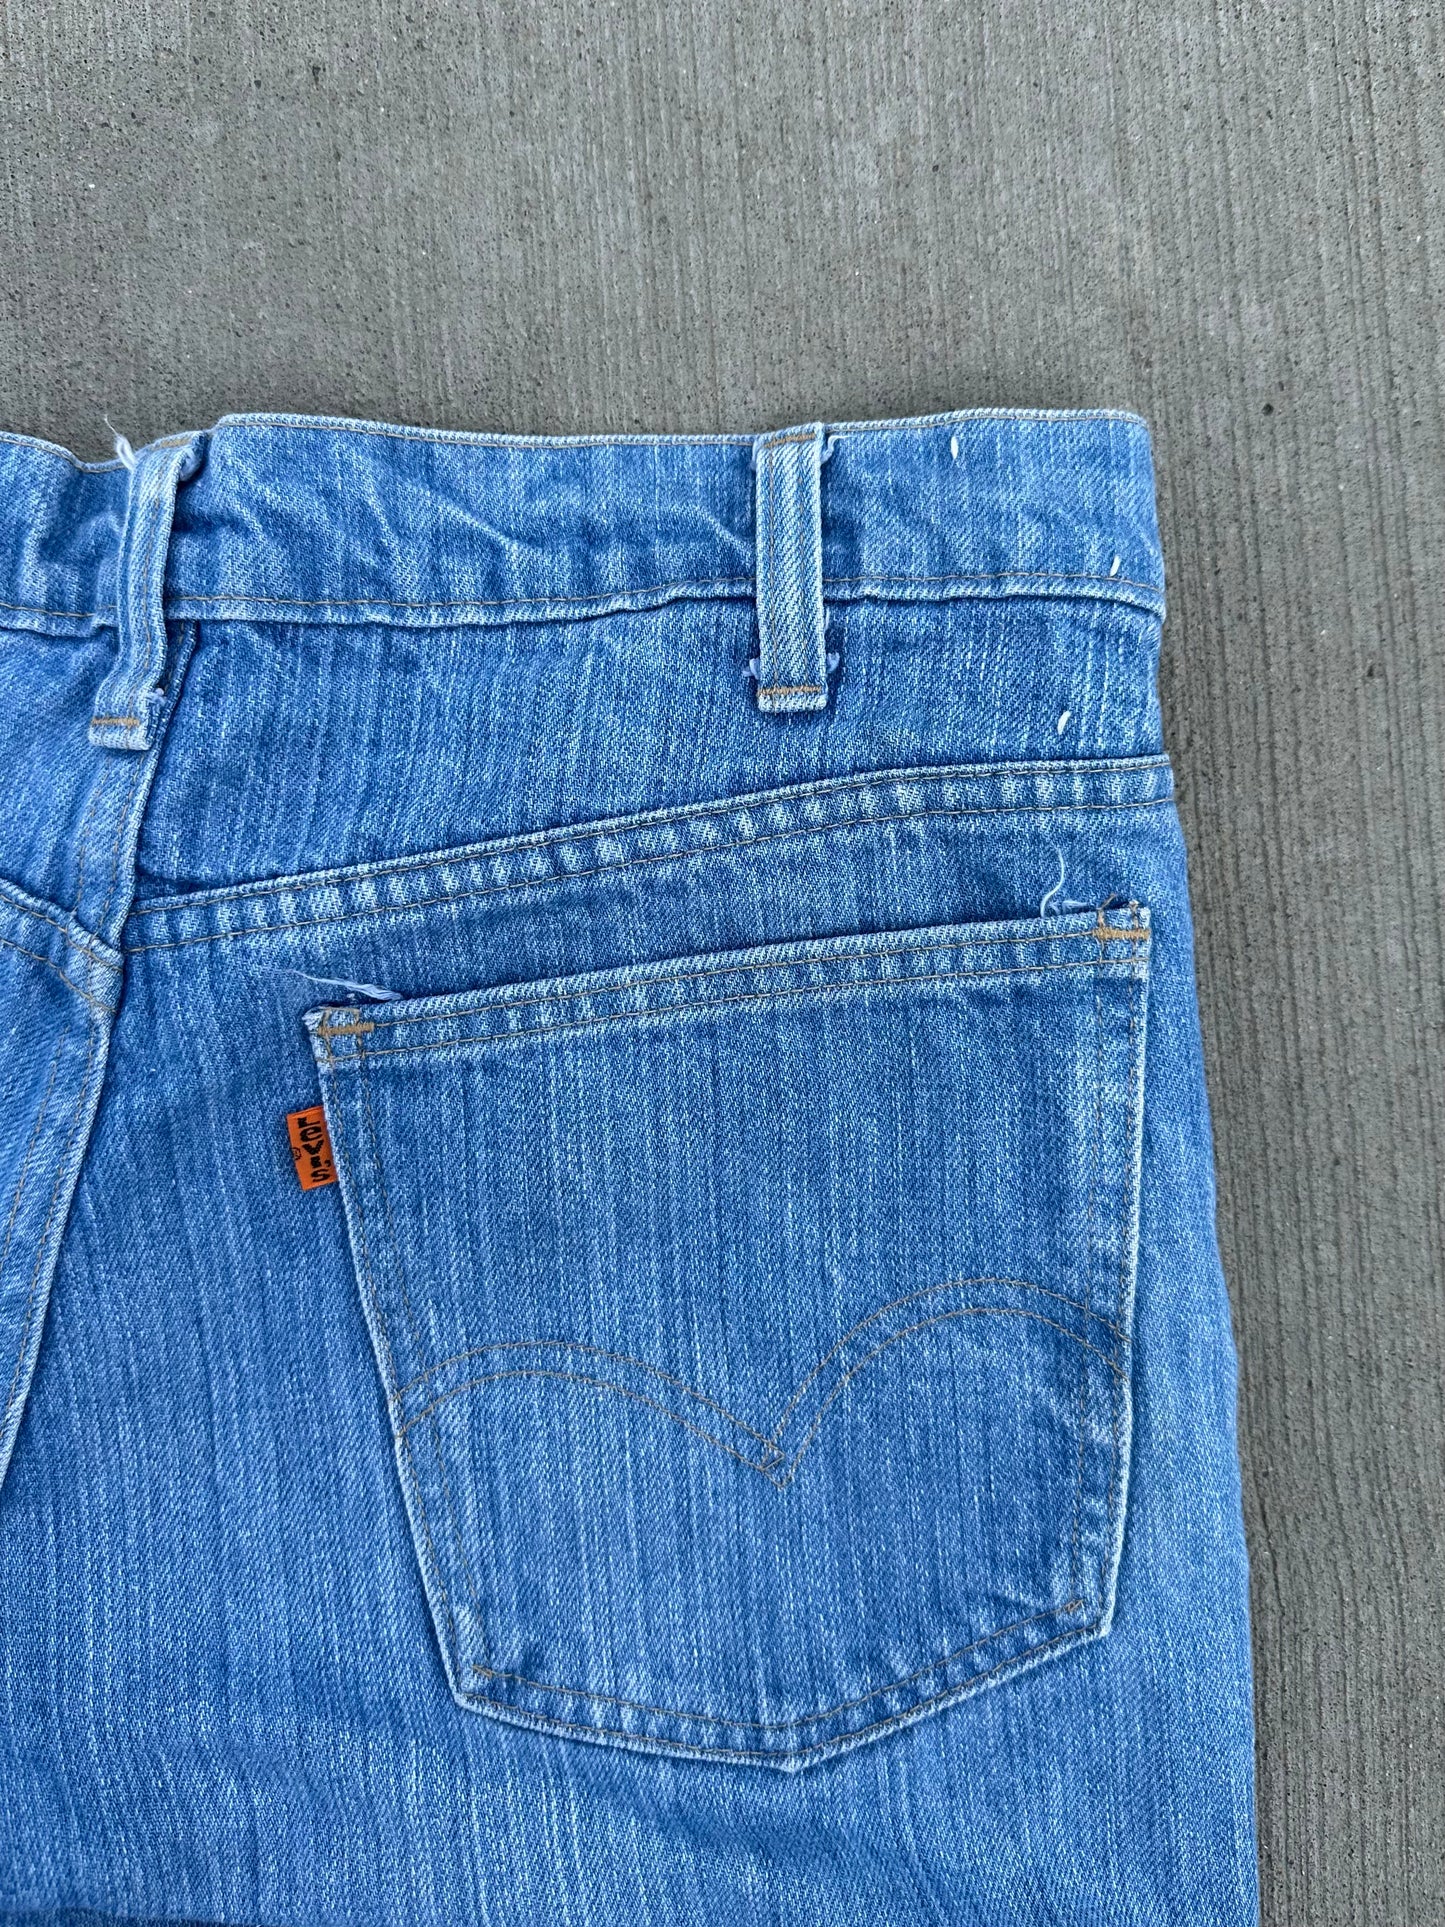 (31 x 30) Vintage 80s Levi Orange Tabs Light Wash Flared Jeans